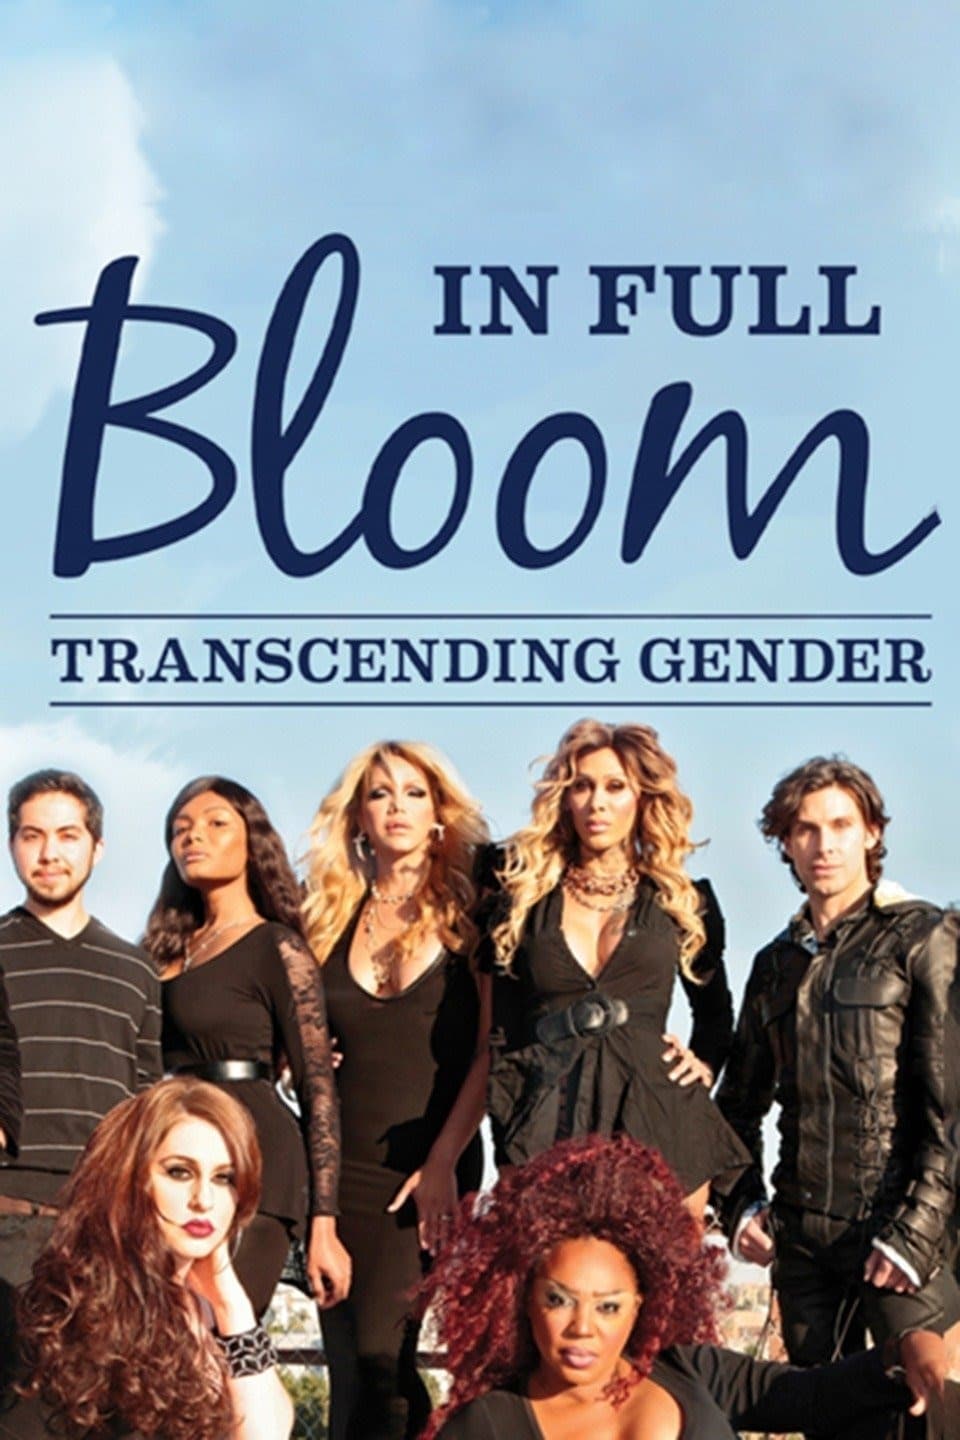 In Full Bloom... Transcending Gender